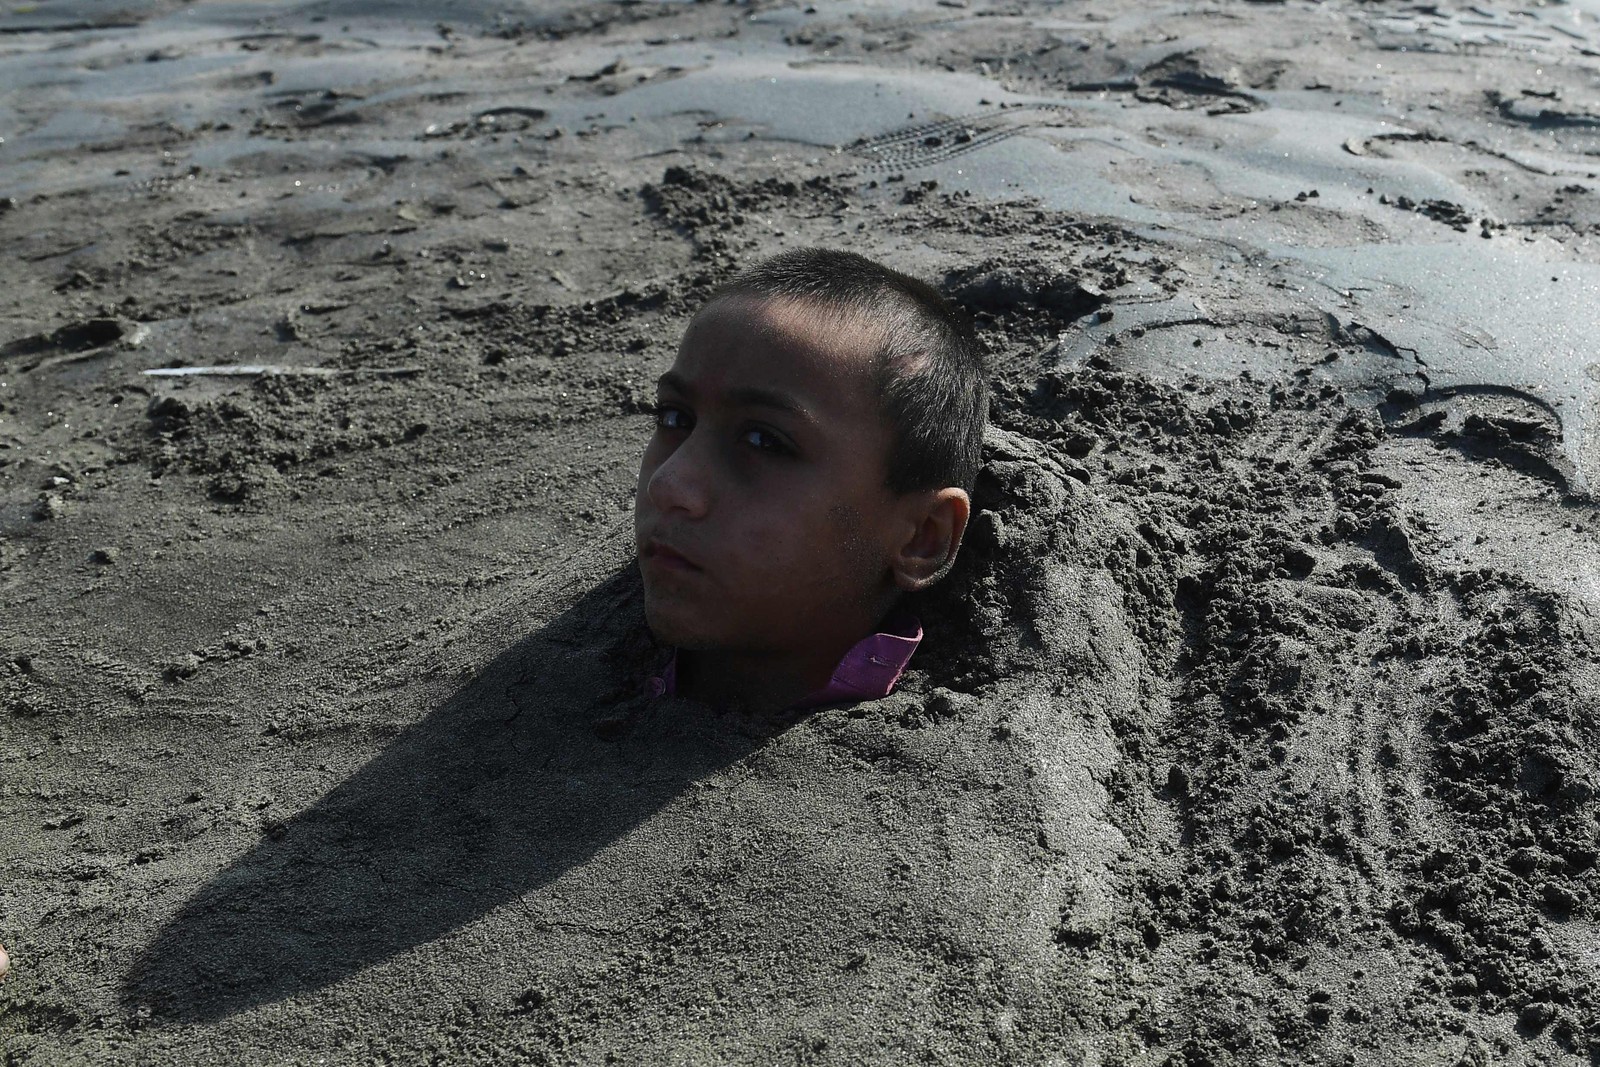 Menino é coberto de areia em uma praia por seus pais sob a crença de que a exposição durante um eclipse solar curará sua doença, em Karachi, Paquistão — Foto: ASIF HASSAN/AFP